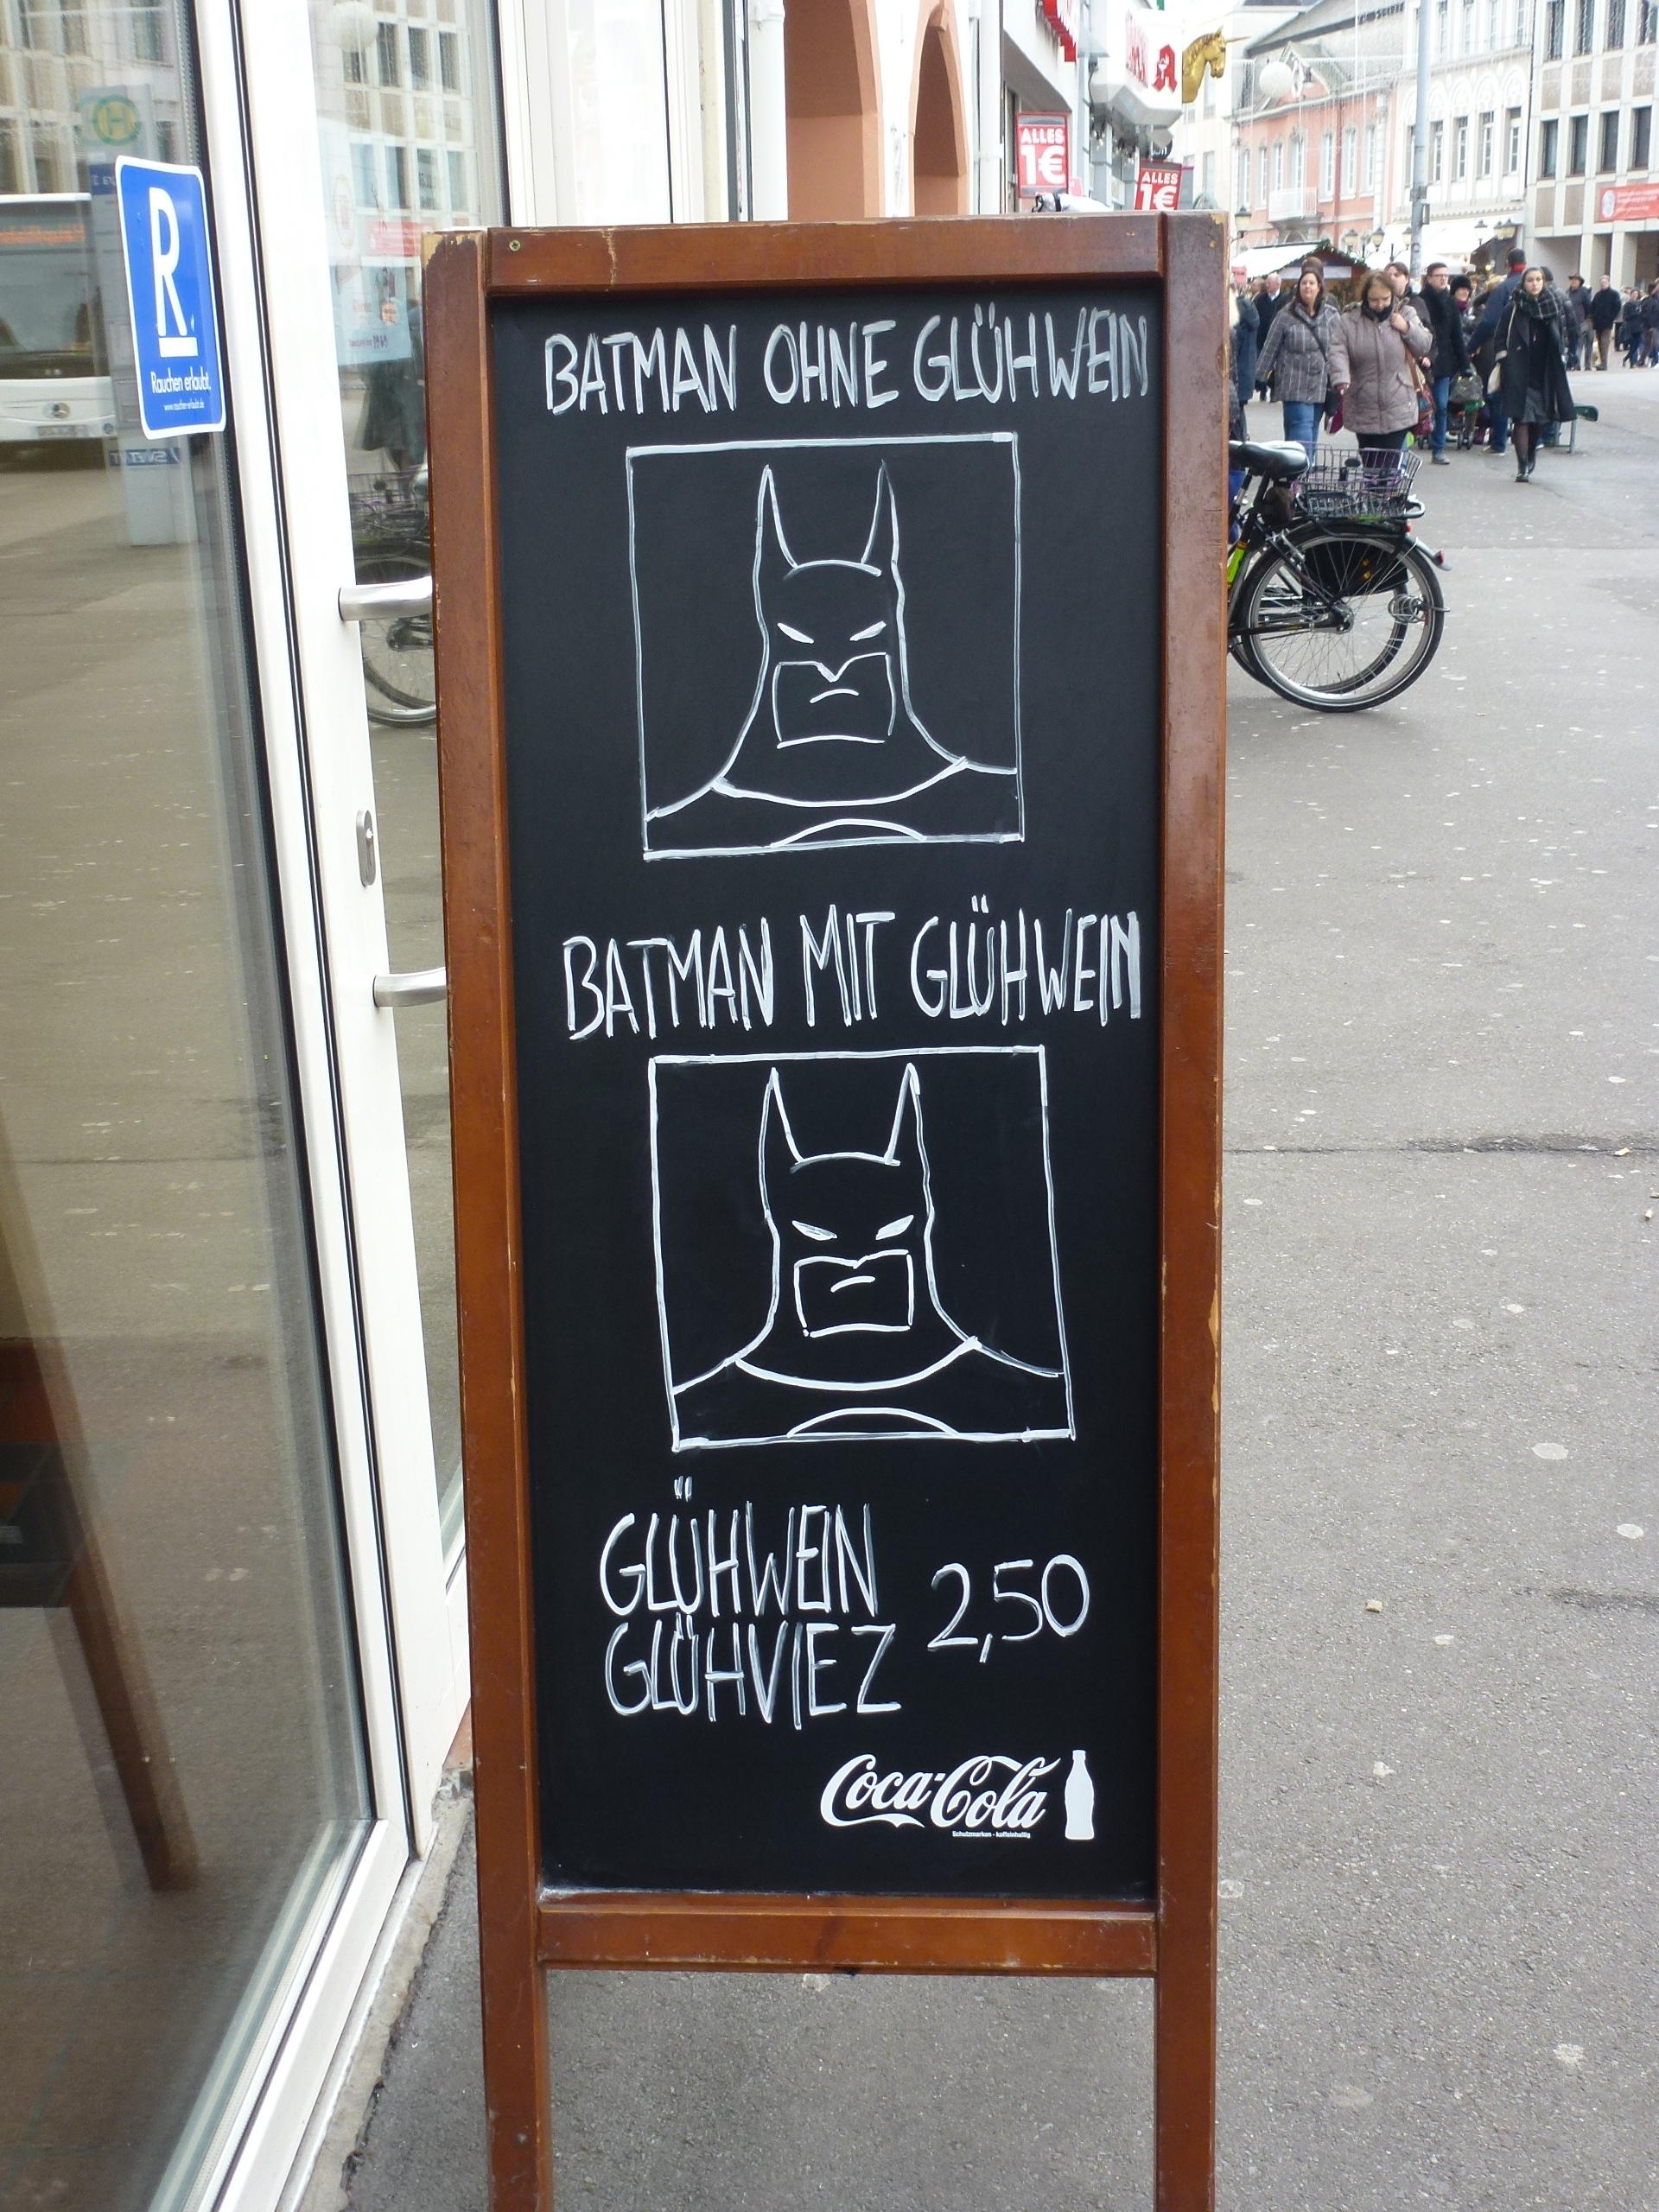 Werbung im Comicstyle: "Batman ohne Glühwein" vs. "Batman mit Glüwein" Batman scheint´s egal zu sein...